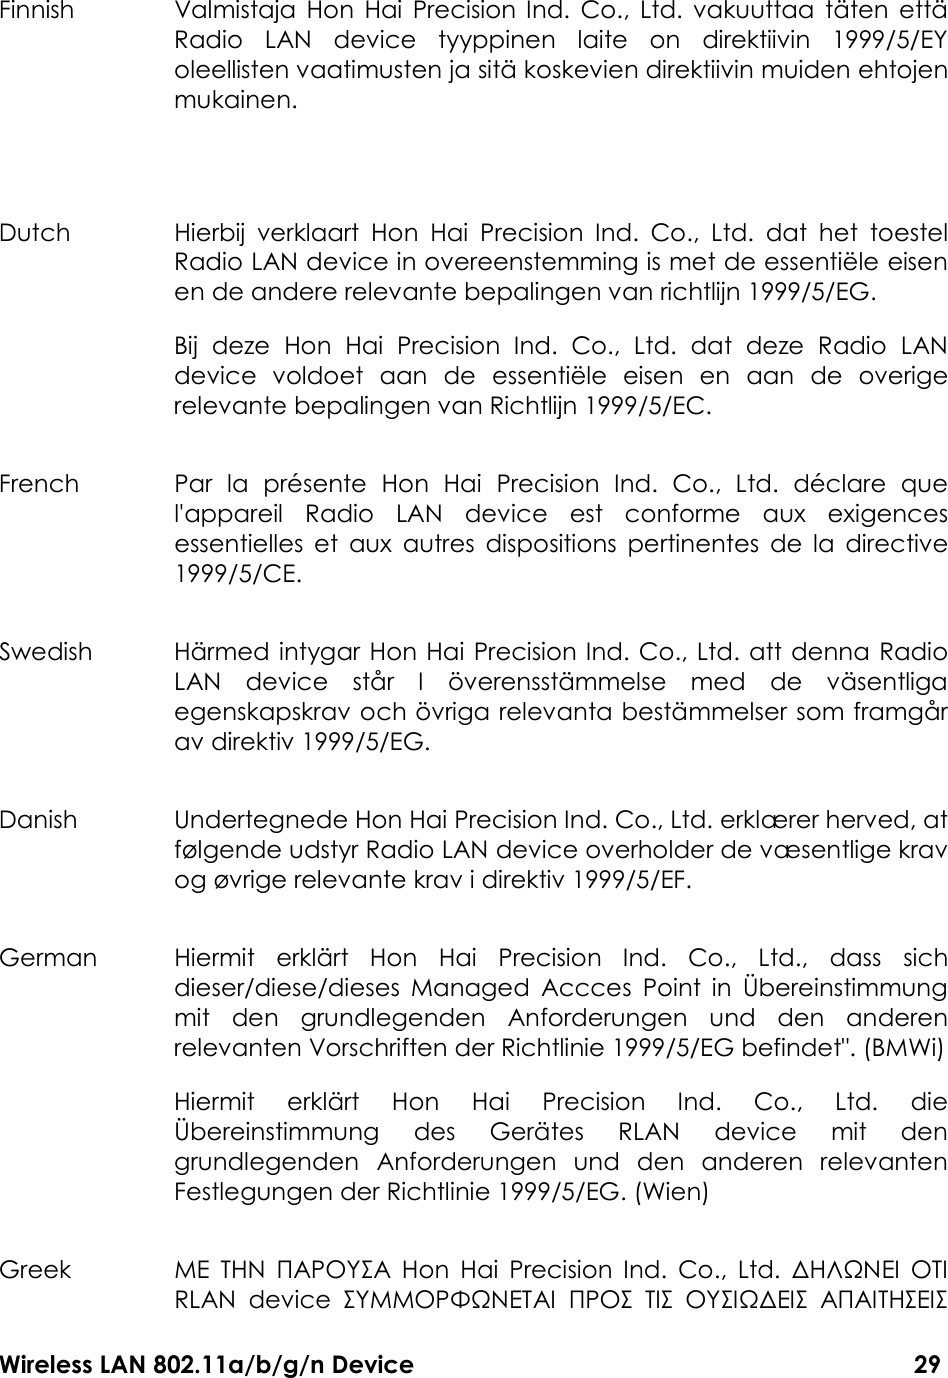 Wireless LAN 802.11a/b/g/n Device                                                                                  29 Finnish  Valmistaja  Hon  Hai Precision  Ind.  Co., Ltd.  vakuuttaa  täten  että Radio  LAN  device  tyyppinen  laite  on  direktiivin  1999/5/EY oleellisten vaatimusten ja sitä koskevien direktiivin muiden ehtojen mukainen.  Dutch  Hierbij  verklaart  Hon  Hai  Precision  Ind.  Co.,  Ltd.  dat  het  toestel Radio LAN device in overeenstemming is met de essentiële eisen en de andere relevante bepalingen van richtlijn 1999/5/EG.   Bij  deze  Hon  Hai  Precision  Ind.  Co.,  Ltd.  dat  deze  Radio  LAN device  voldoet  aan  de  essentiële  eisen  en  aan  de  overige relevante bepalingen van Richtlijn 1999/5/EC. French  Par  la  présente  Hon  Hai  Precision  Ind.  Co.,  Ltd.  déclare  que l&apos;appareil  Radio  LAN  device  est  conforme  aux  exigences essentielles  et  aux  autres  dispositions  pertinentes  de  la  directive 1999/5/CE. Swedish  Härmed intygar Hon Hai Precision Ind. Co., Ltd. att denna Radio LAN  device  står  I  överensstämmelse  med  de  väsentliga egenskapskrav och övriga relevanta bestämmelser som framgår av direktiv 1999/5/EG. Danish  Undertegnede Hon Hai Precision Ind. Co., Ltd. erklærer herved, at følgende udstyr Radio LAN device overholder de væsentlige krav og øvrige relevante krav i direktiv 1999/5/EF. German  Hiermit  erklärt  Hon  Hai  Precision  Ind.  Co.,  Ltd.,  dass  sich dieser/diese/dieses  Managed  Accces  Point  in  Übereinstimmung mit  den  grundlegenden  Anforderungen  und  den  anderen relevanten Vorschriften der Richtlinie 1999/5/EG befindet&quot;. (BMWi)  Hiermit  erklärt  Hon  Hai  Precision  Ind.  Co.,  Ltd.  die Übereinstimmung  des  Gerätes  RLAN  device  mit  den grundlegenden  Anforderungen  und  den  anderen  relevanten Festlegungen der Richtlinie 1999/5/EG. (Wien)   Greek  ΜΕ  ΤΗΝ  ΠΑΡΟΥΣΑ  Hon  Hai  Precision  Ind.  Co.,  Ltd.  ∆ΗΛΩΝΕΙ  ΟΤΙ RLAN  device  ΣΥΜΜΟΡΦΩΝΕΤΑΙ  ΠΡΟΣ  ΤΙΣ  ΟΥΣΙΩ∆ΕΙΣ  ΑΠΑΙΤΗΣΕΙΣ 